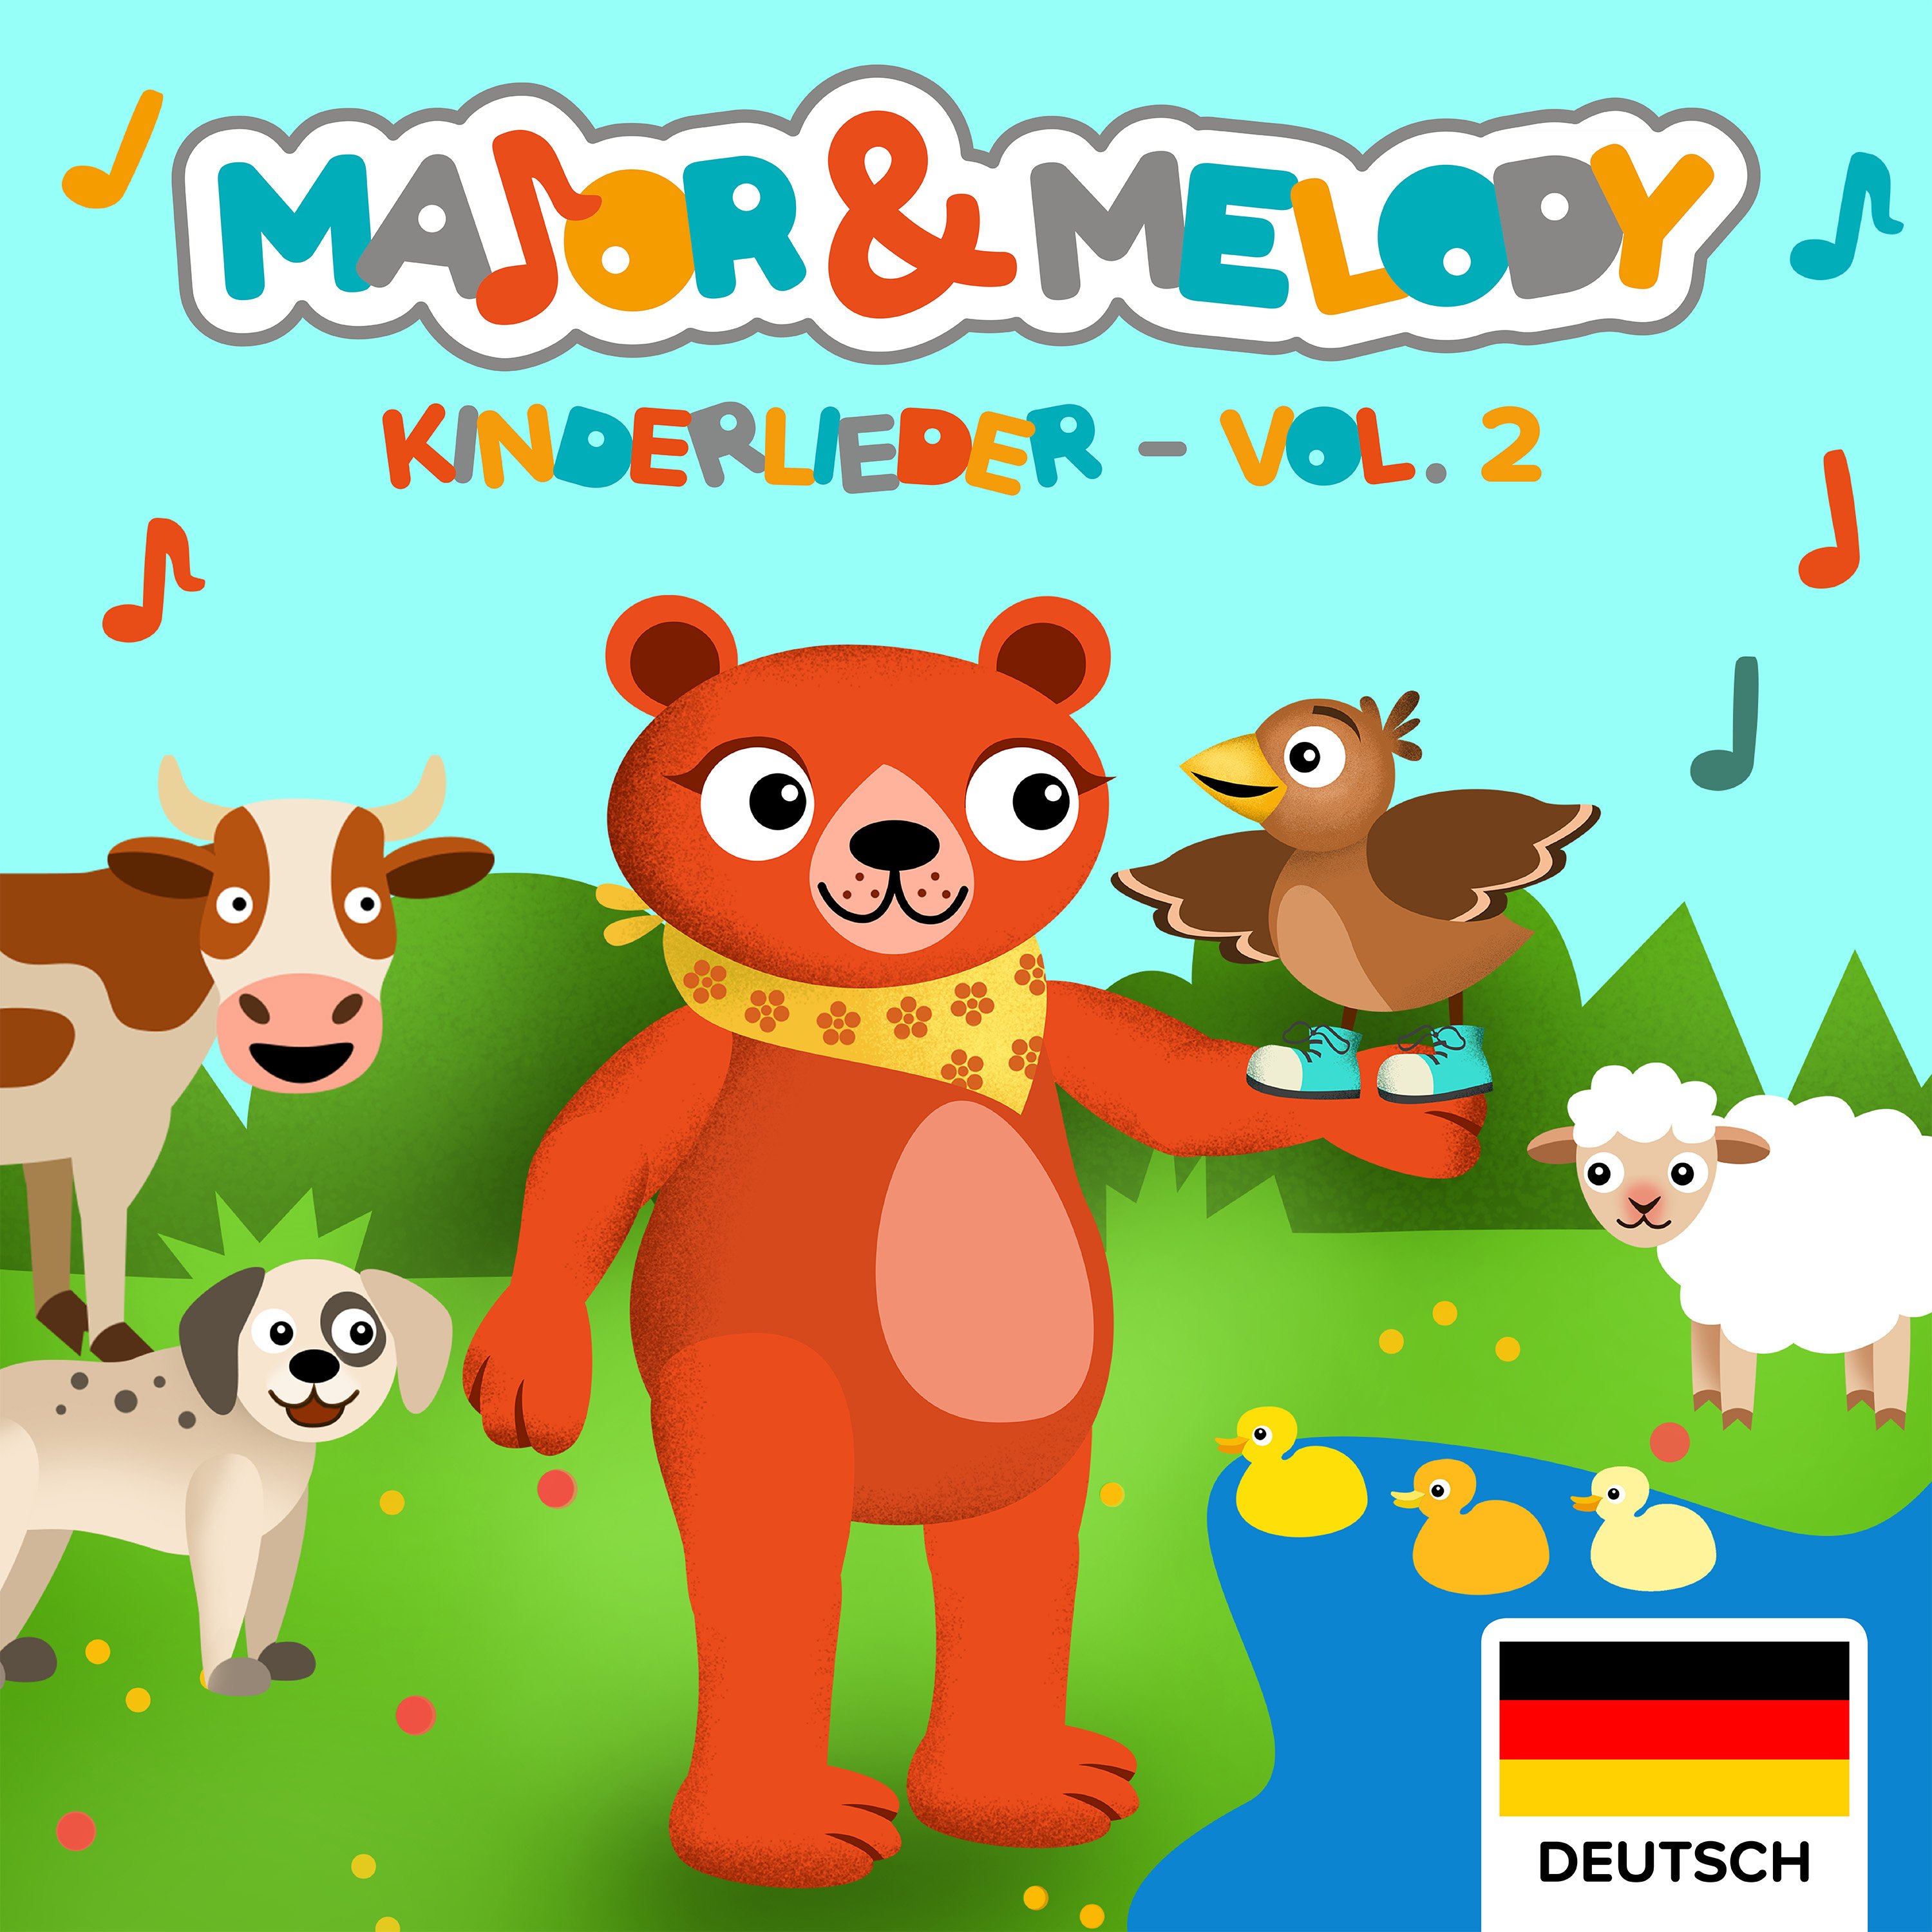 Major & Melody Kinderlieder Album!